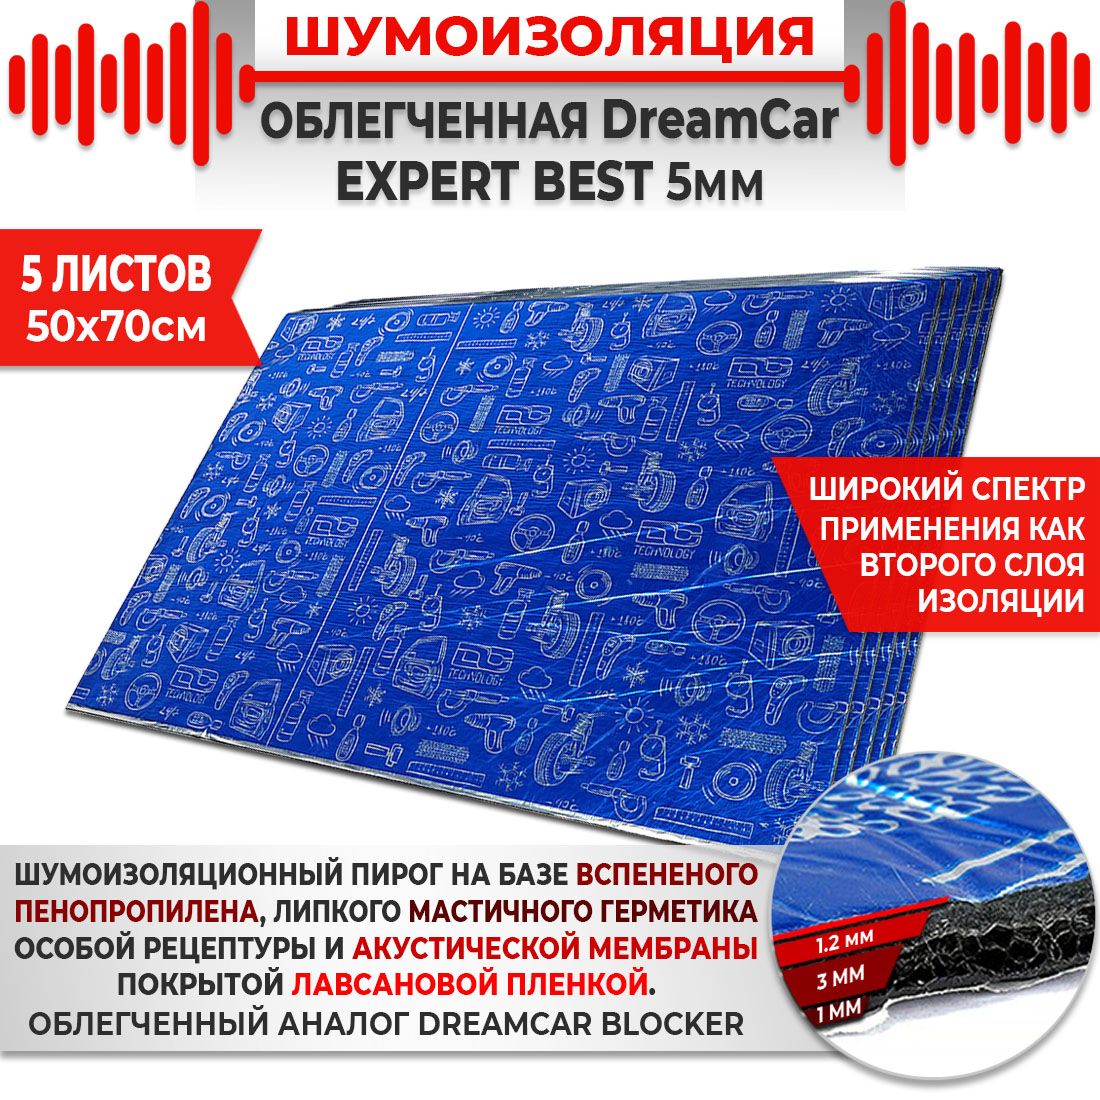 5шт. Шумоизоляция 4х слойная DreamCar Expert Best 5мм 0.7х0.5м 5 листов